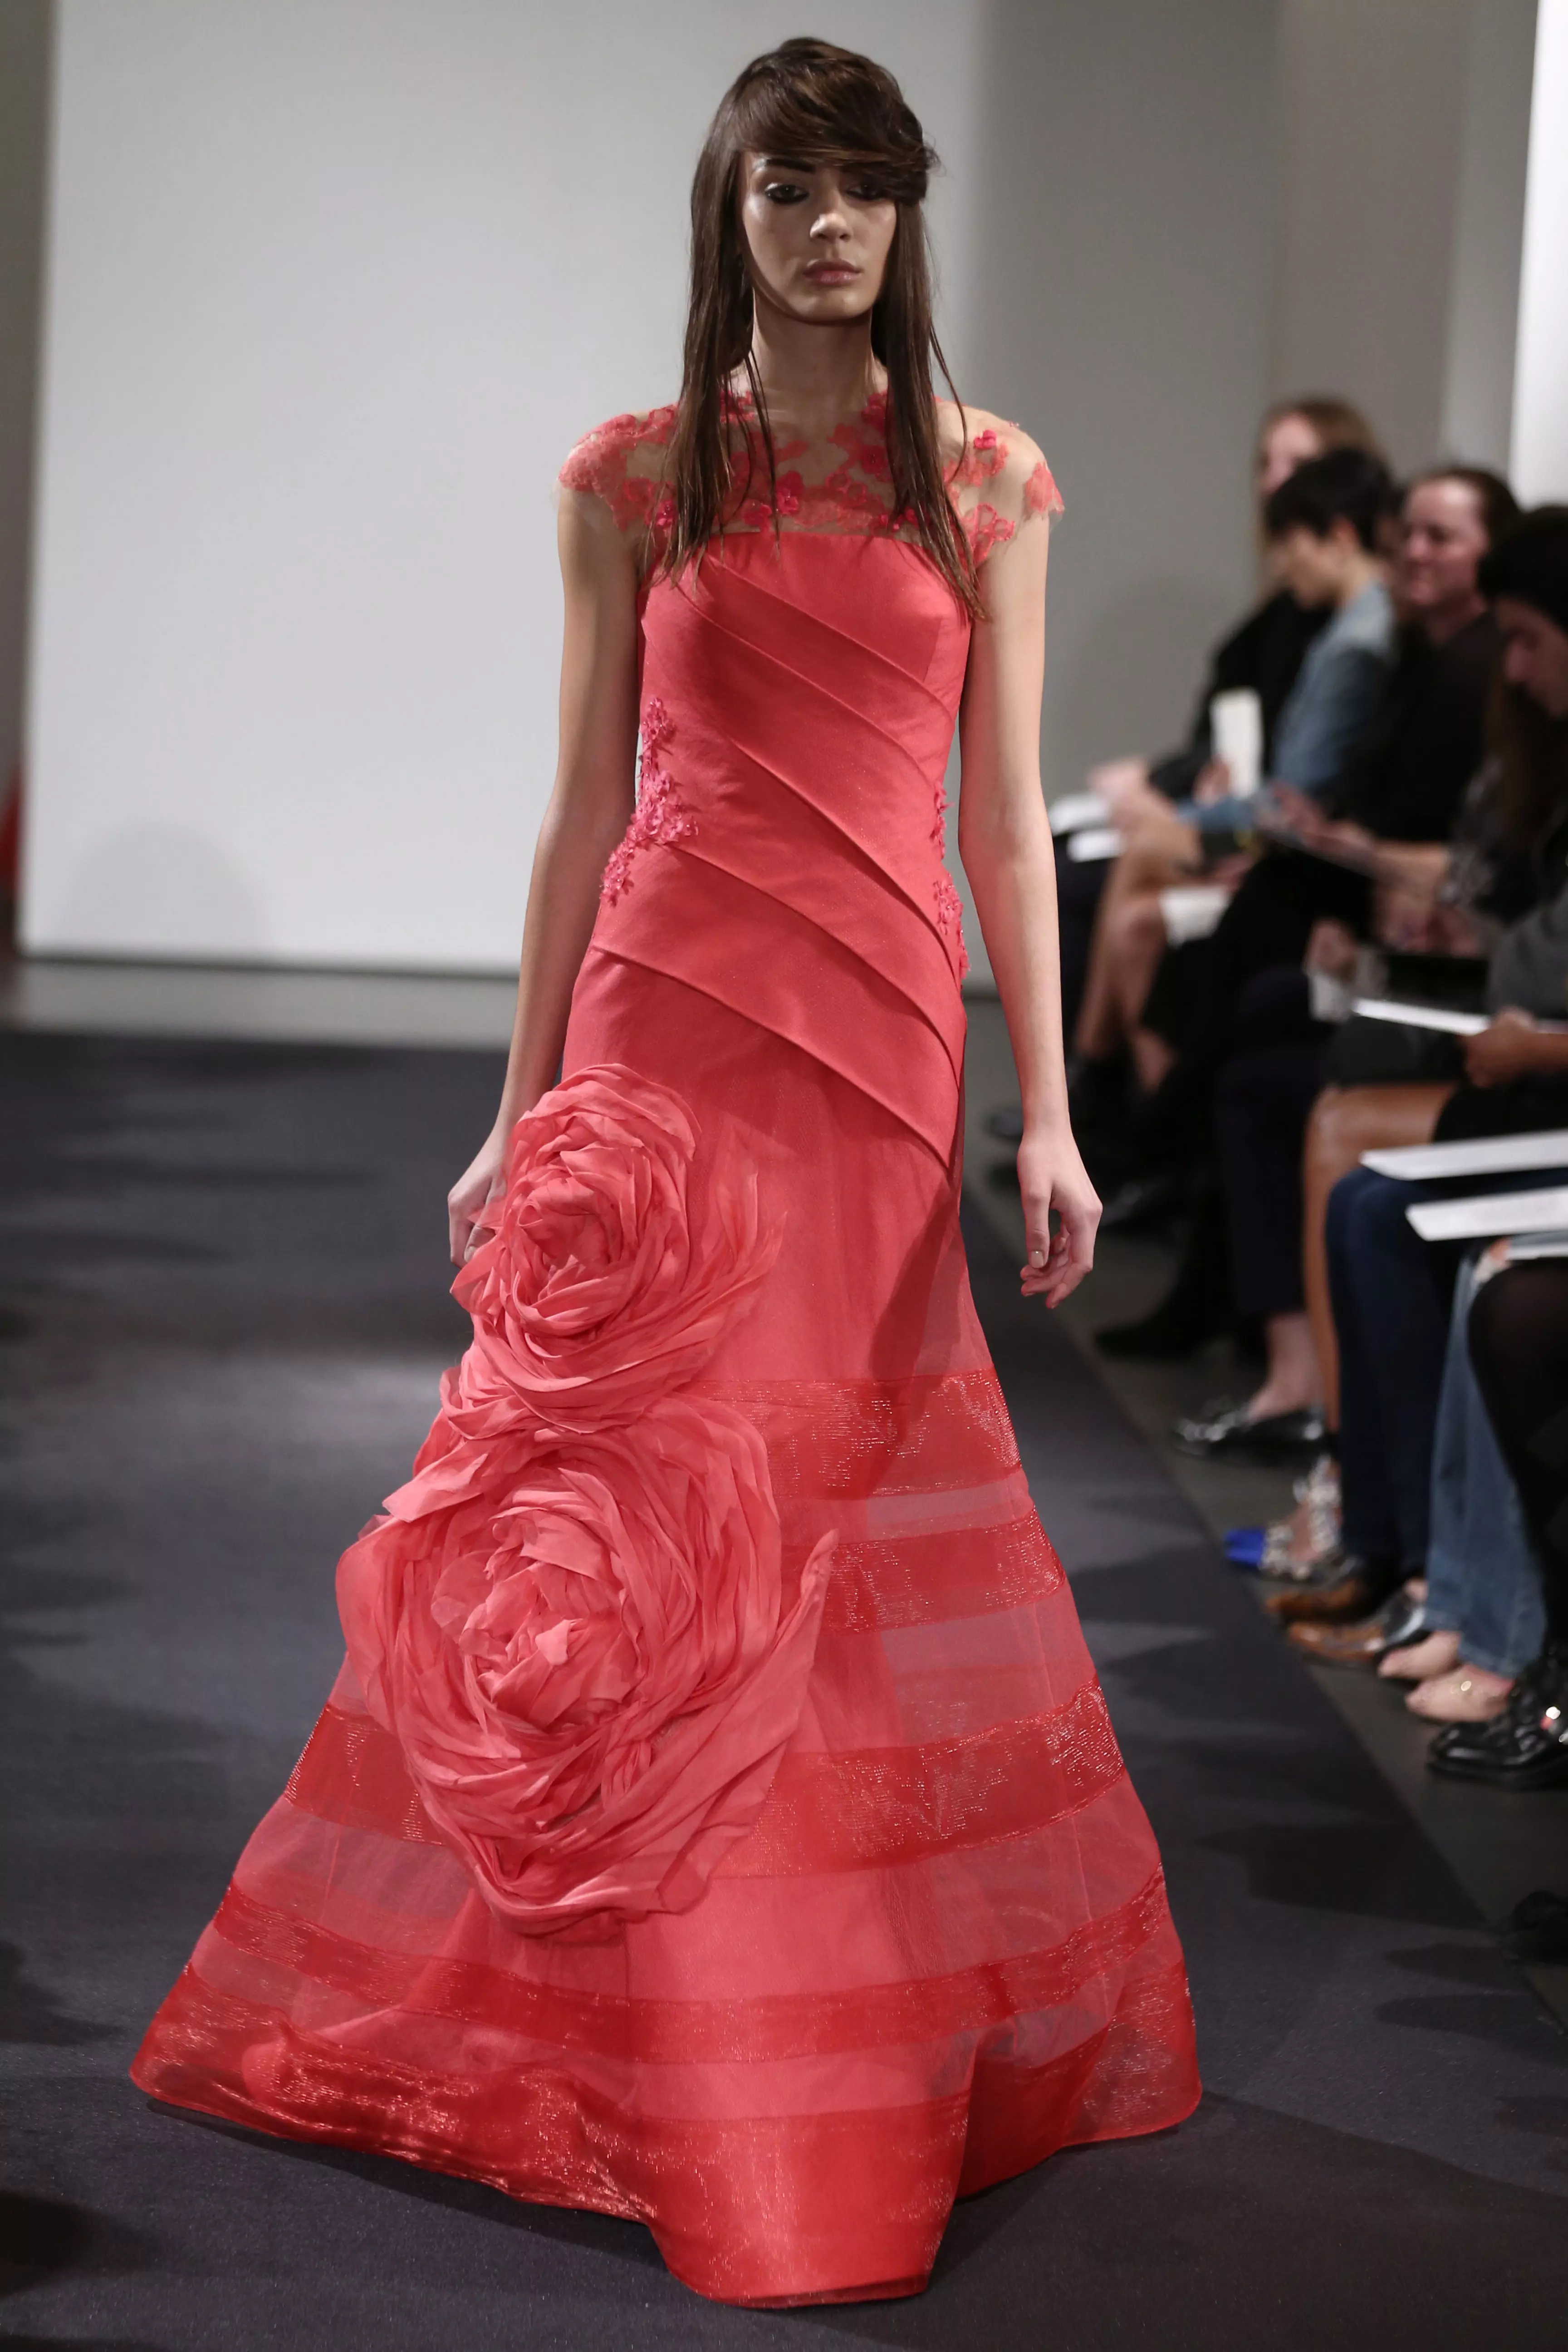 תצוגת שמלות כלה בעיצוב וירה וונג לסתיו 2014 בניו יורק, אוקטובר 2014